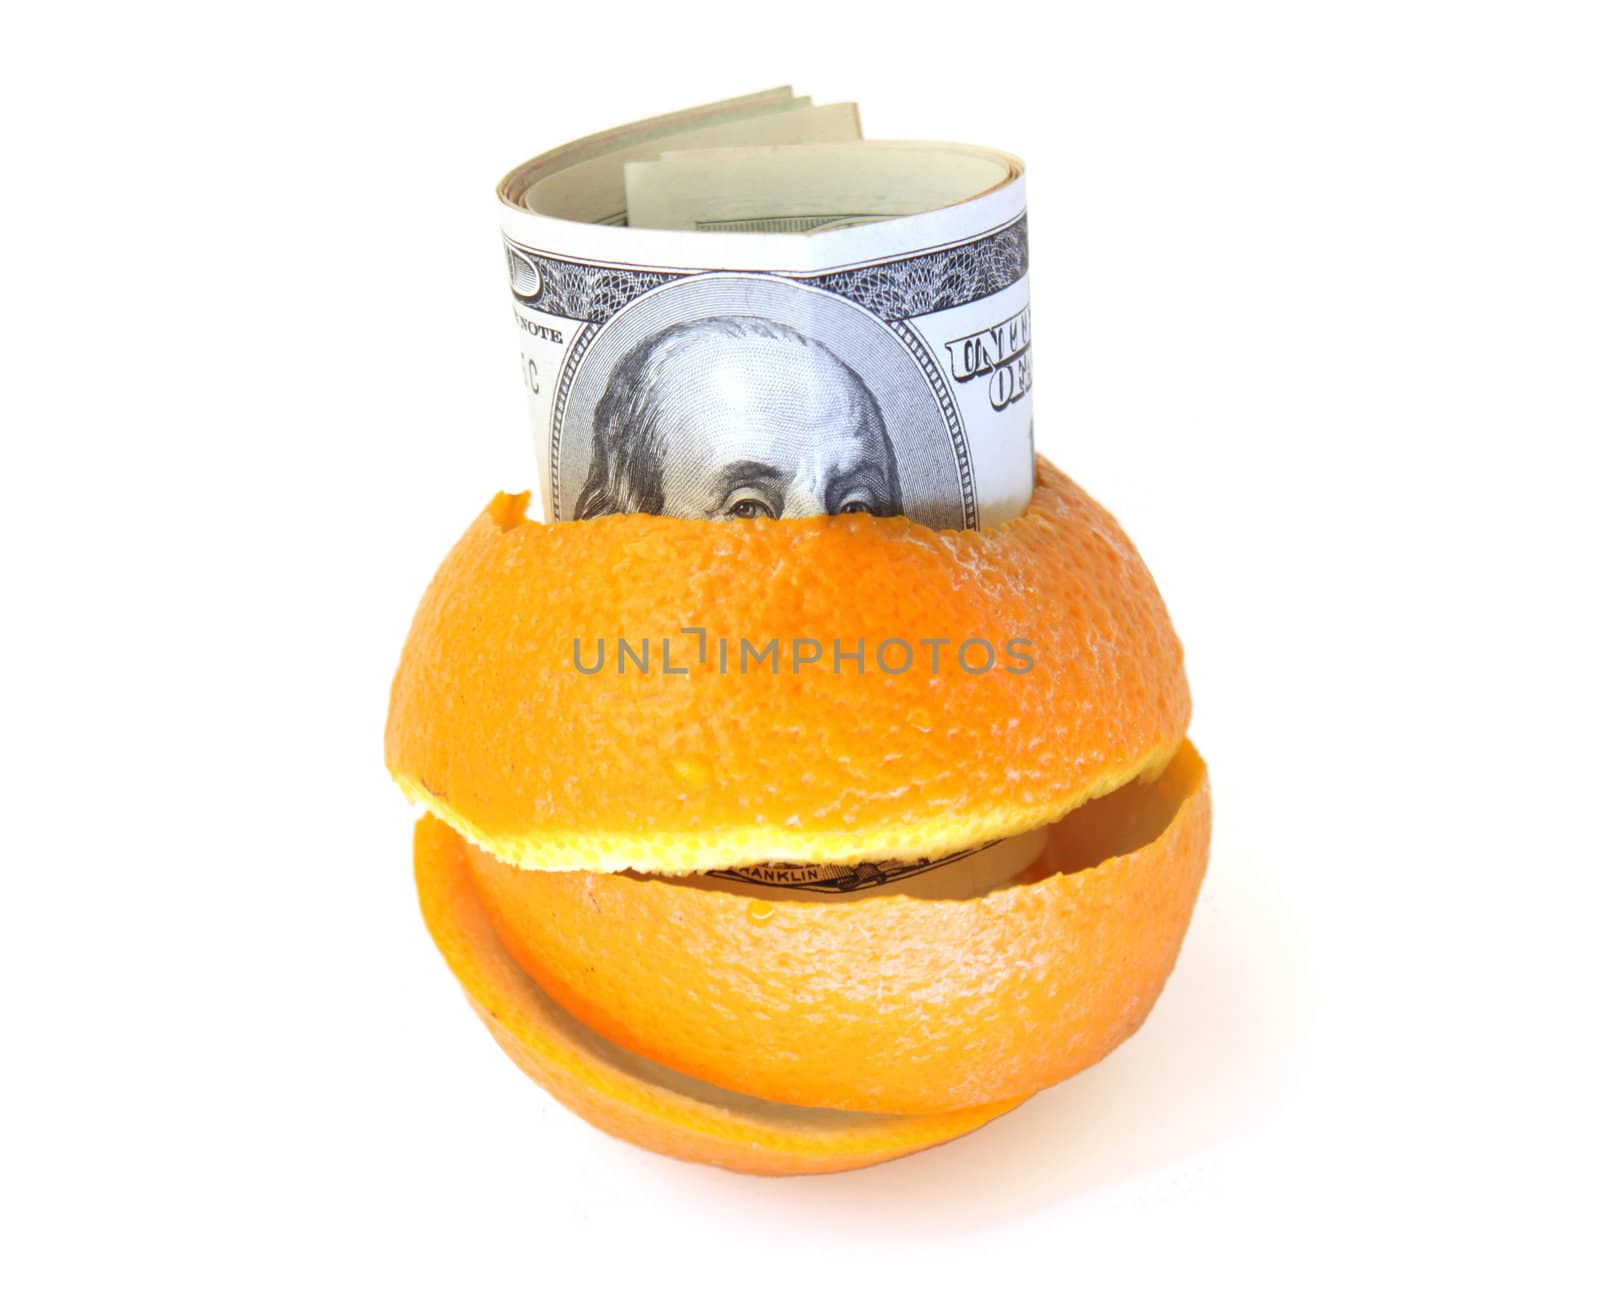 100 dollars banknotes inside of orange peel